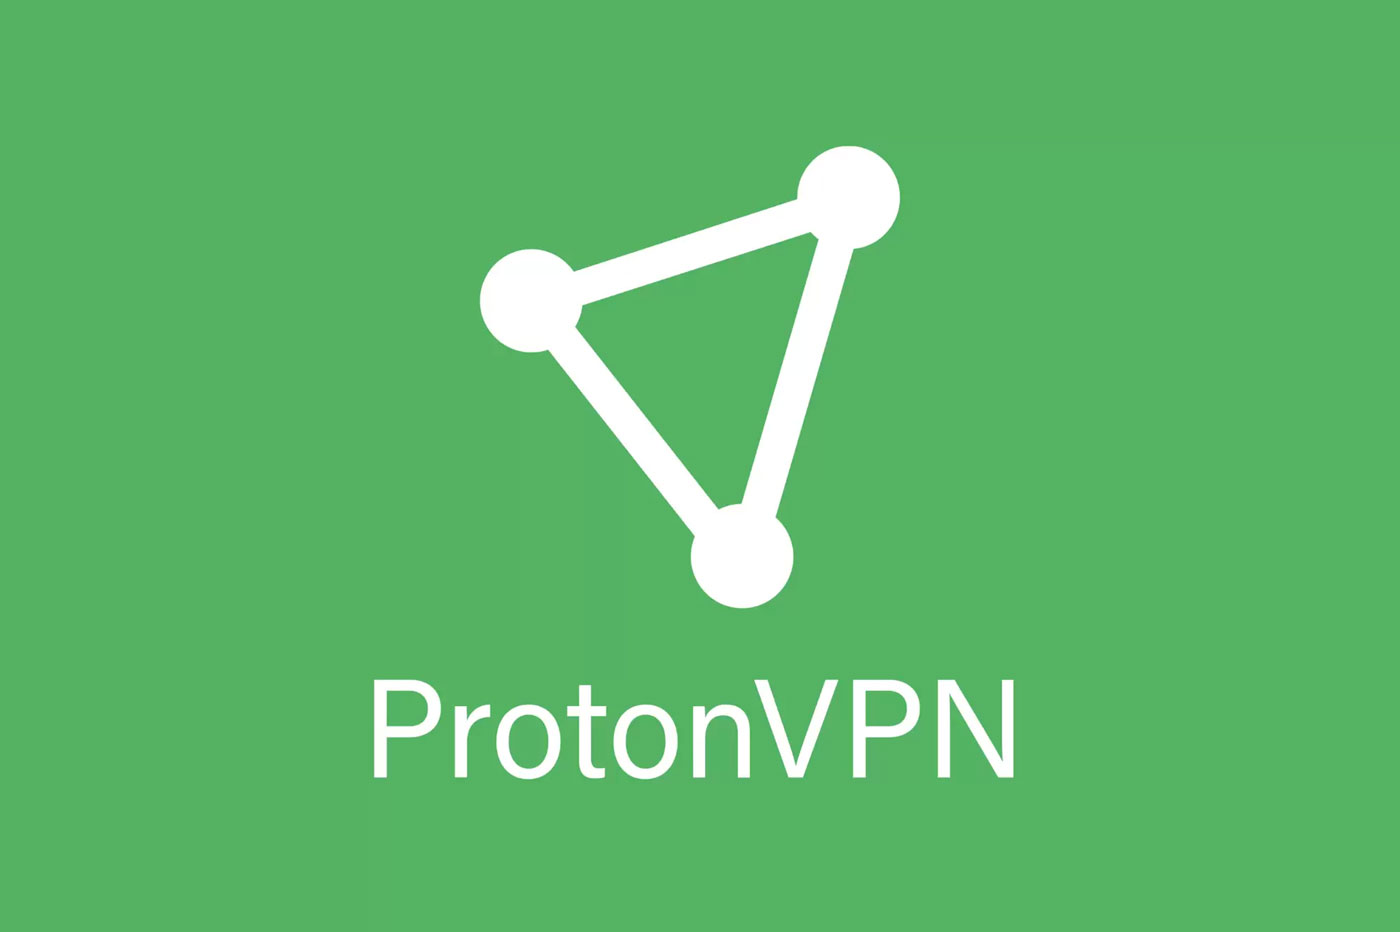 ProtonVPN - Mafi kyawun VPN don mai gudu na sirri